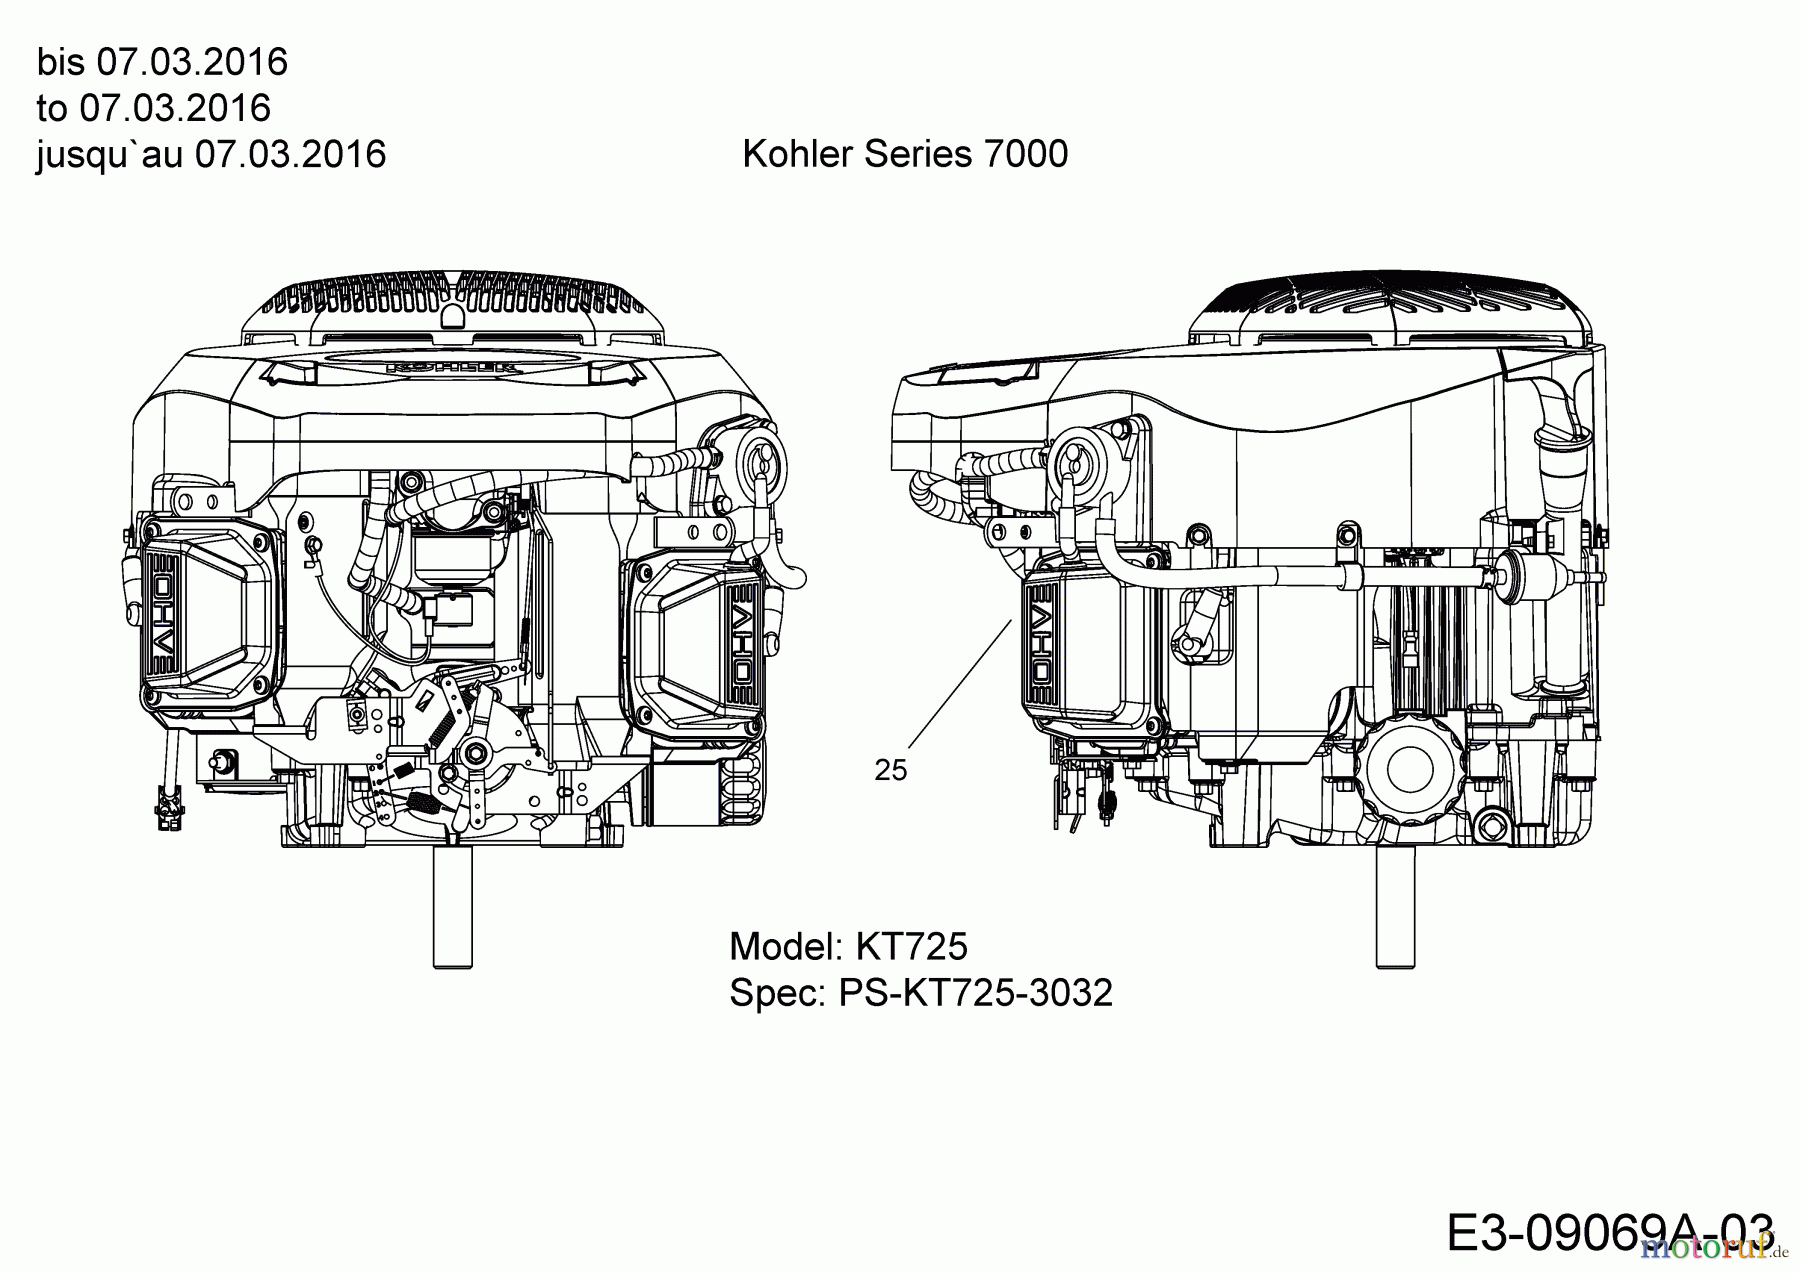  Massey Ferguson Rasentraktoren MF 41-22 RH 13HP91GN695  (2016) Motor Kohler bis 07.03.2016